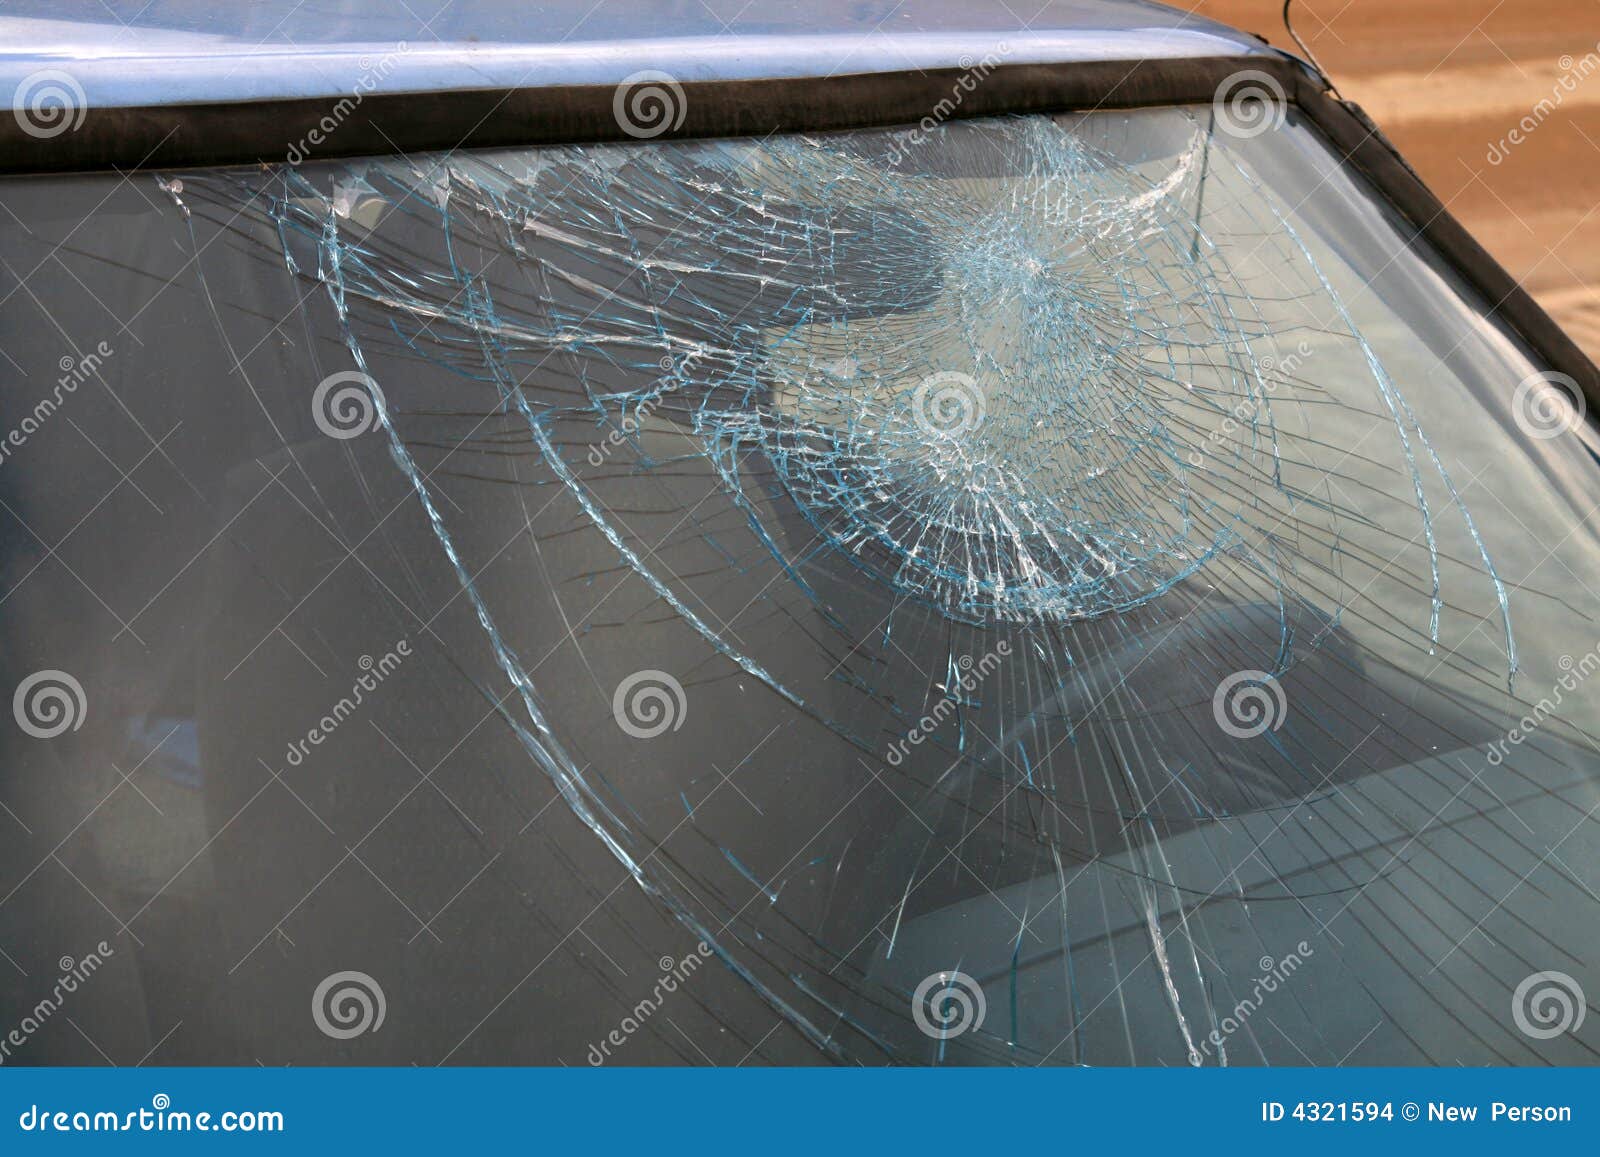 broken window-pane